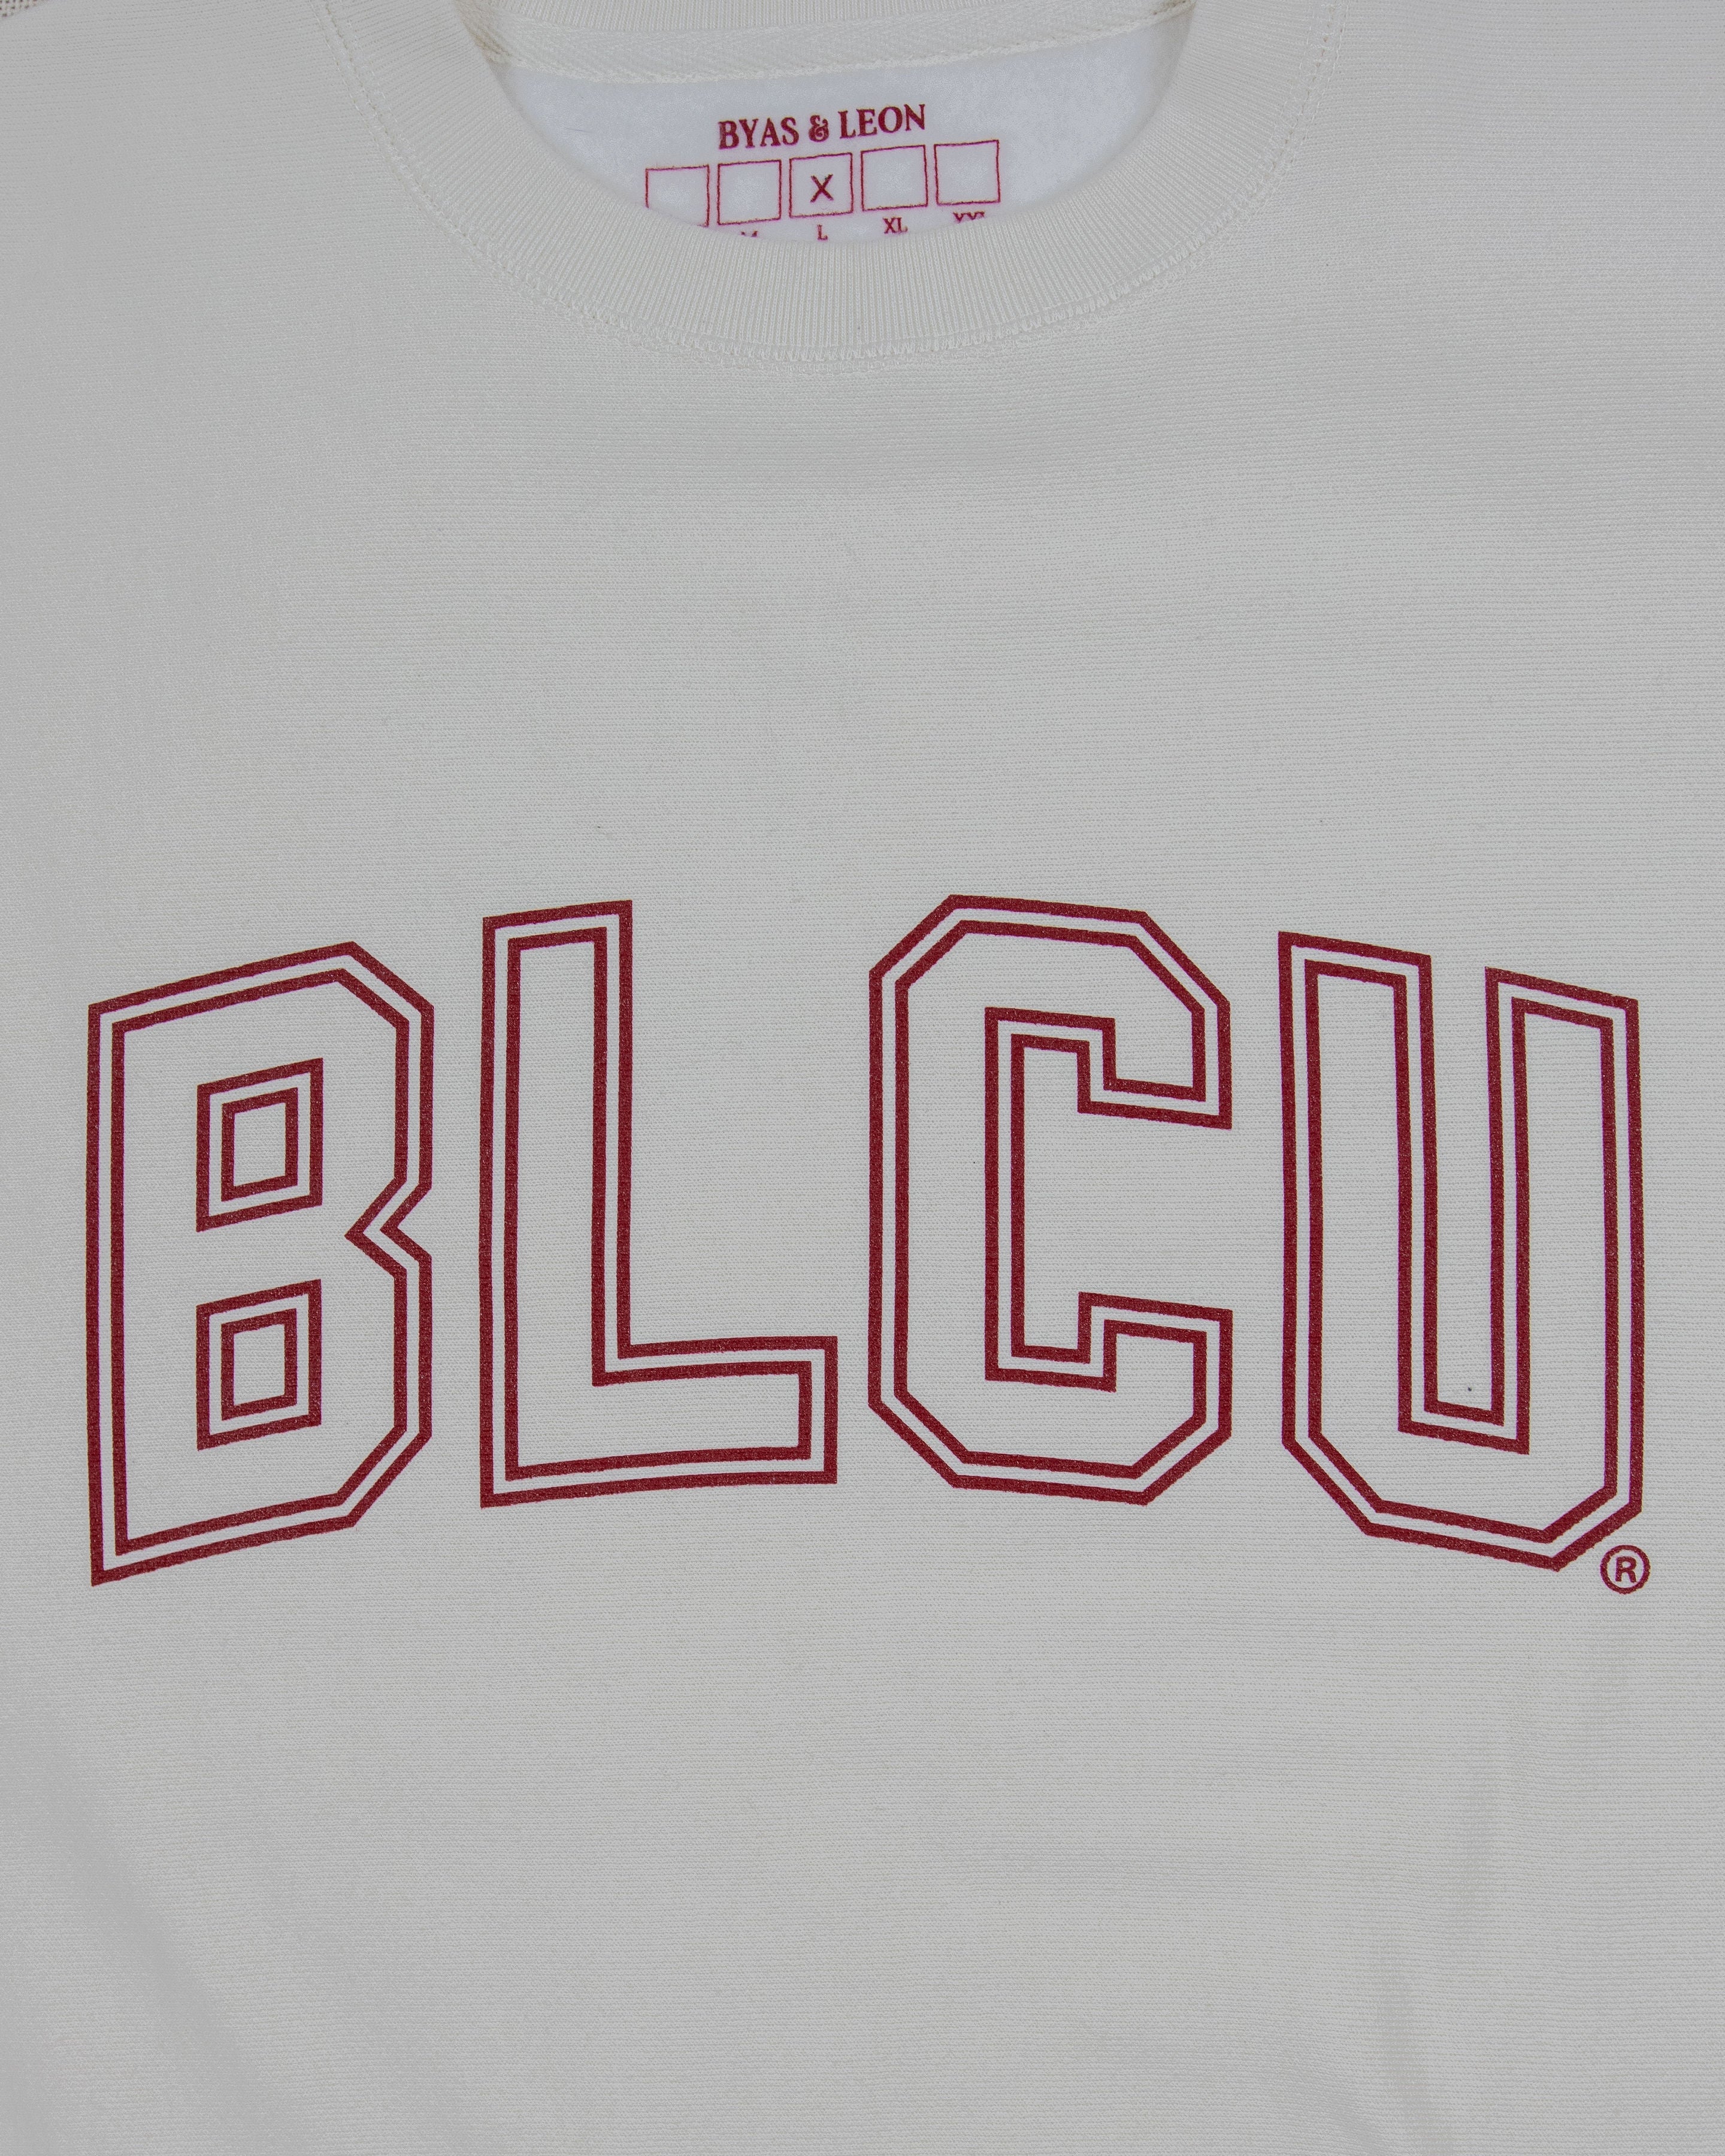 Byas & Leon 'BLCU' Sweater